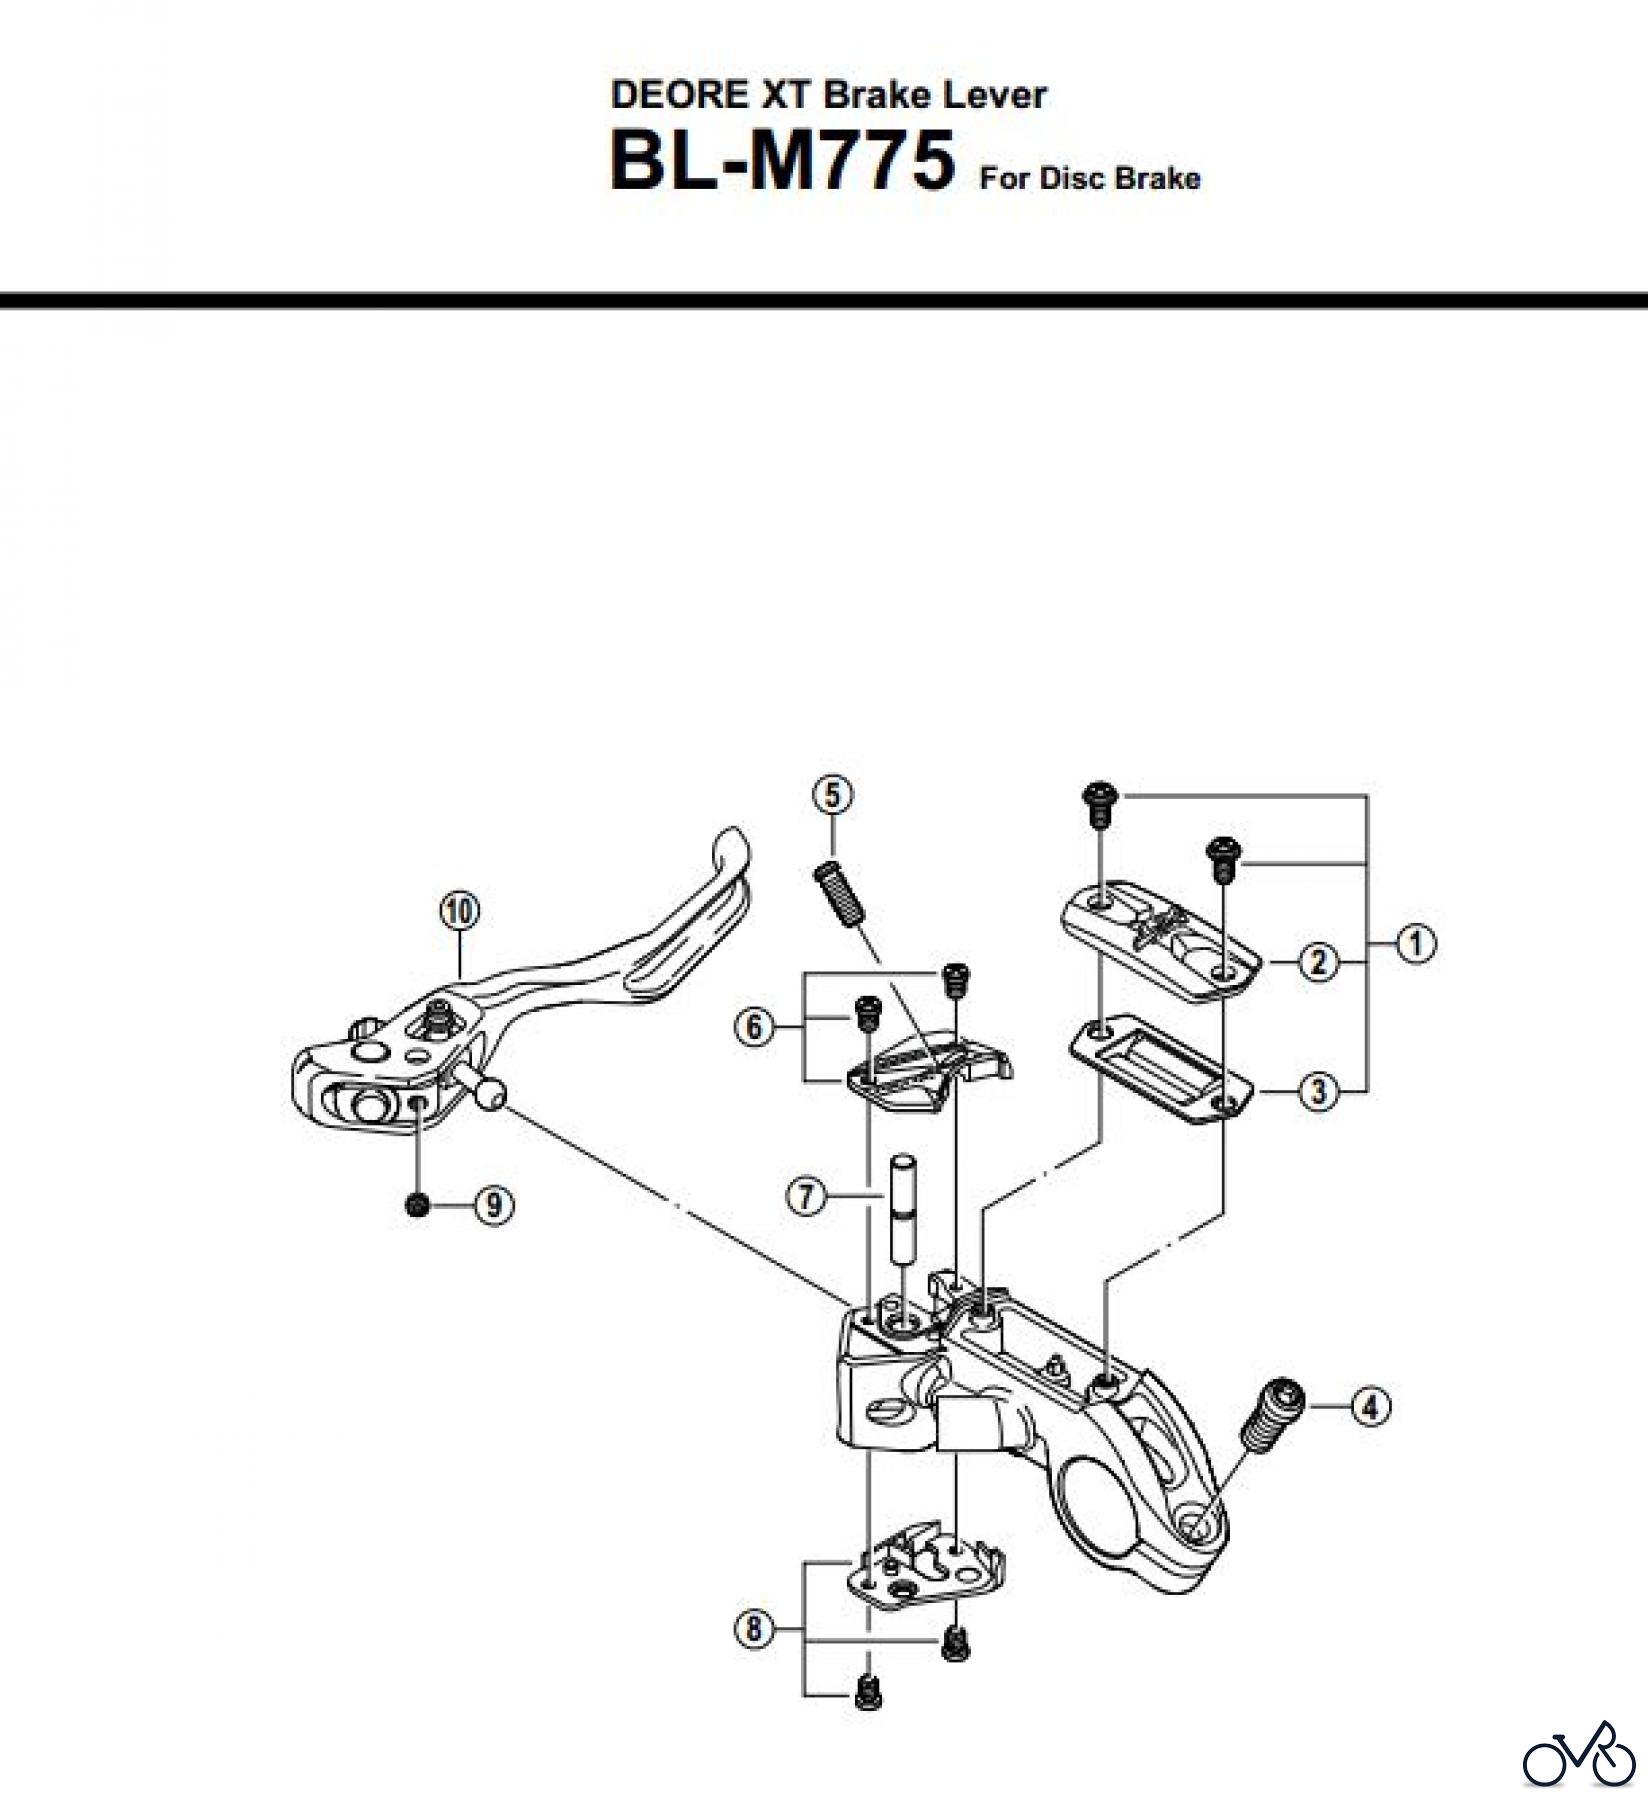  Shimano BL Brake Lever - Bremshebel BL-M775